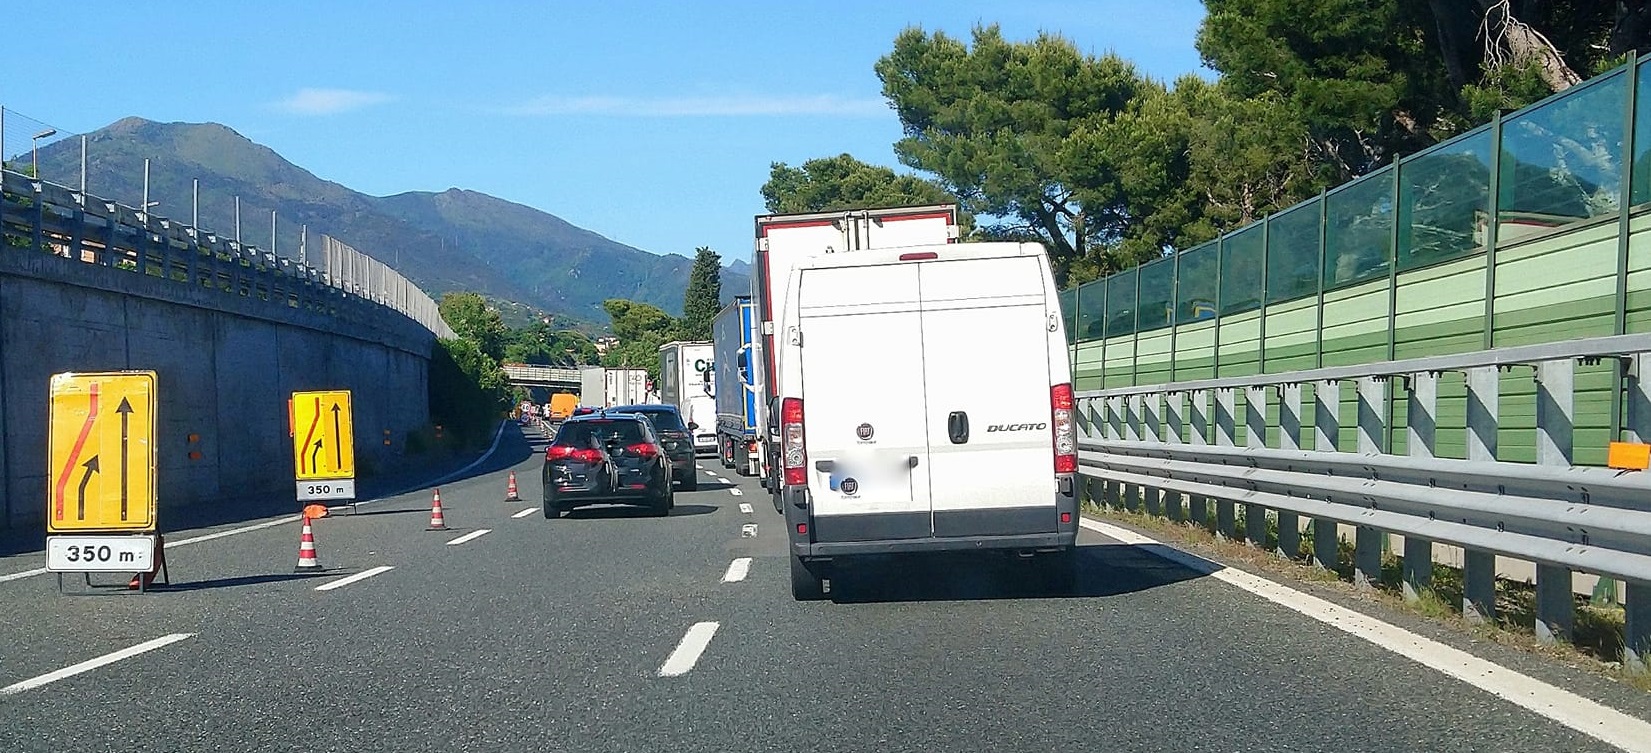 https://www.primocanale.it/materialiarchivio/immagininews/20210821114012-Coda_in_autostrada_A10_all_altezza_di_Varazze_verso_Genova.jpg